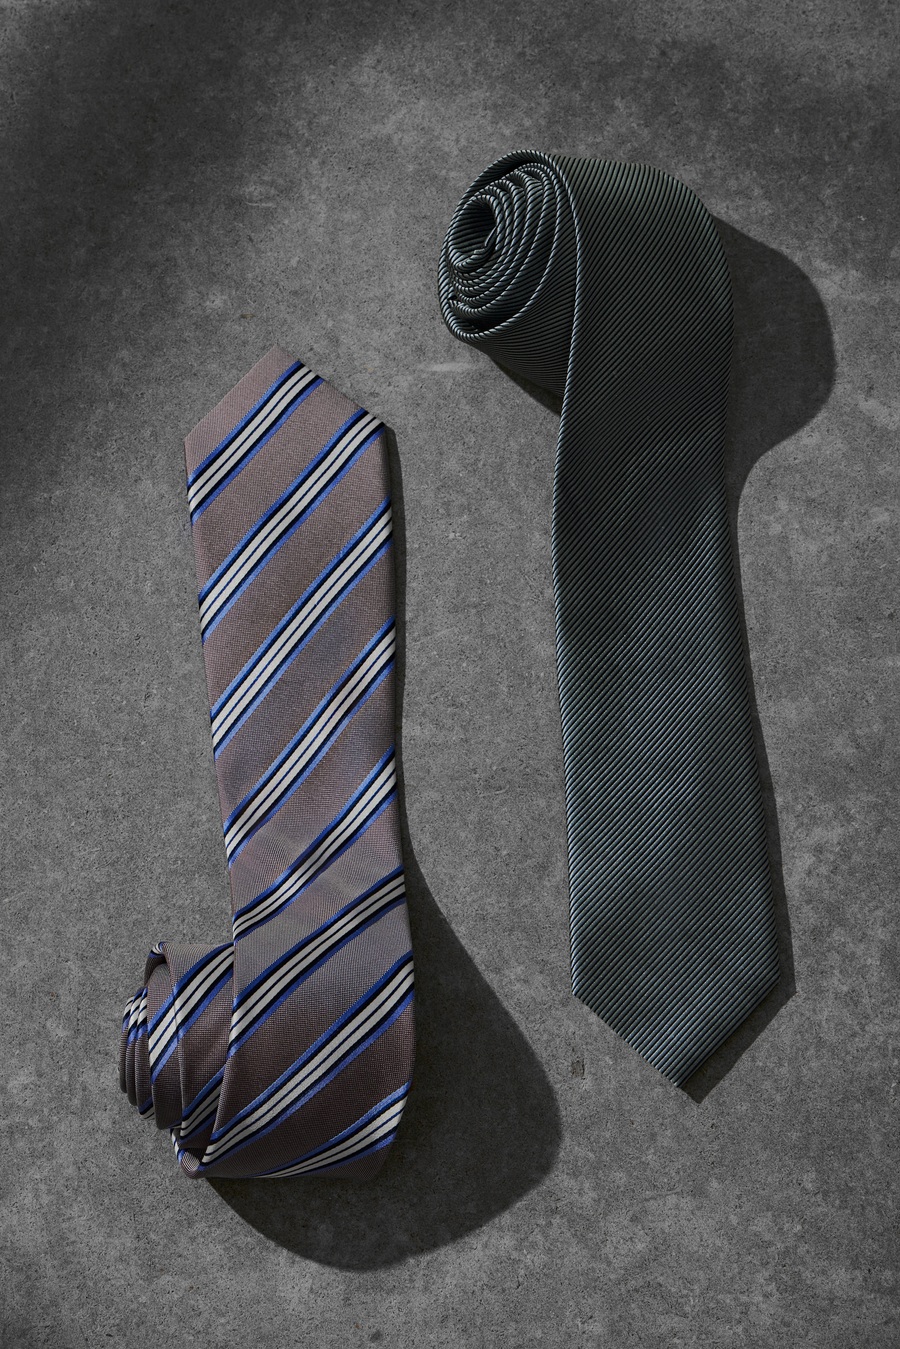 Как выбрать идеальный галстук?